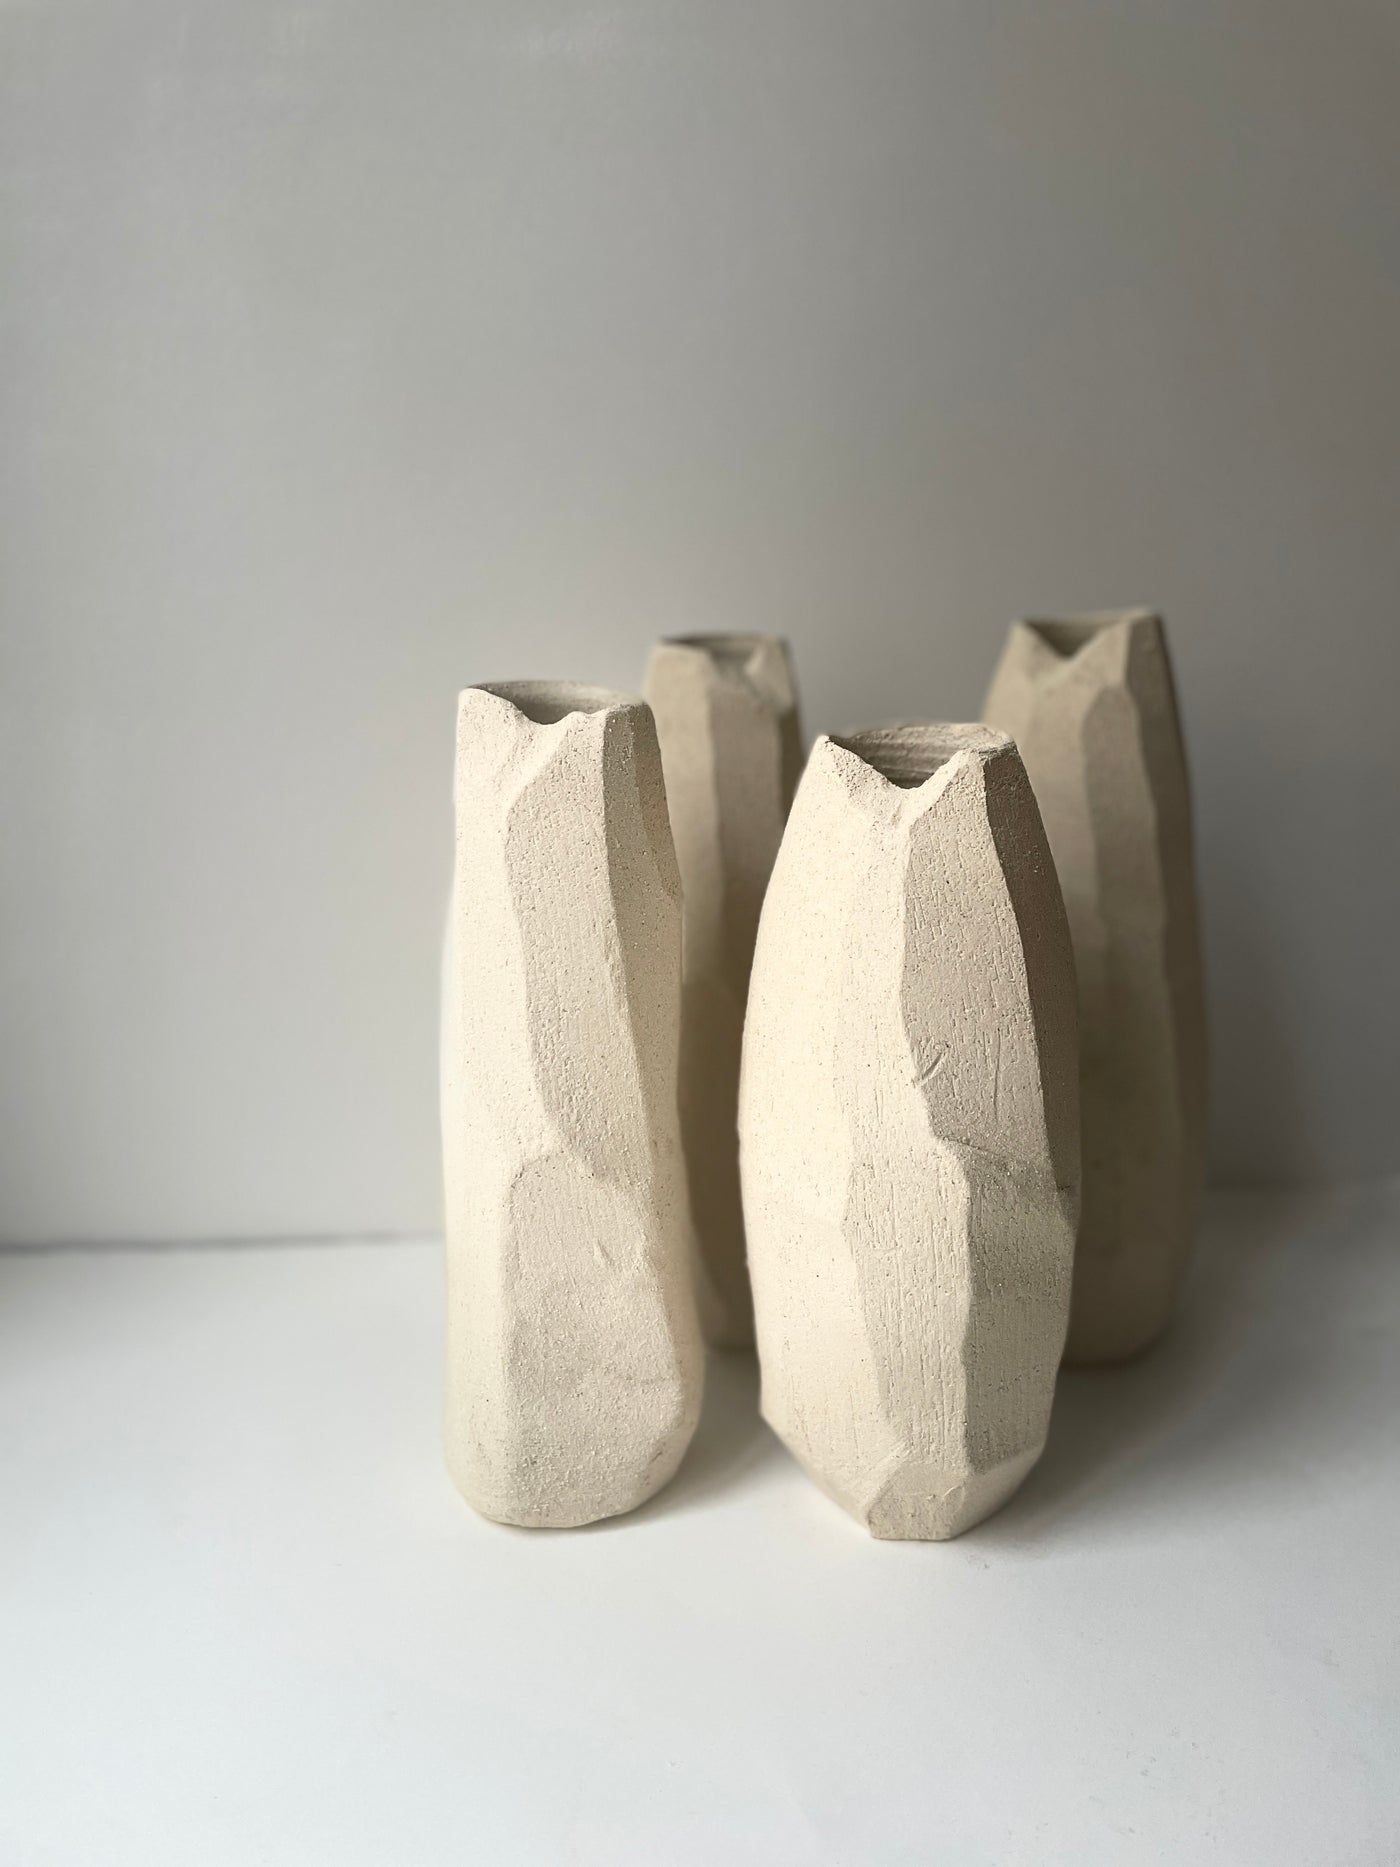 Tall Vase by SIlene Fry Atelier